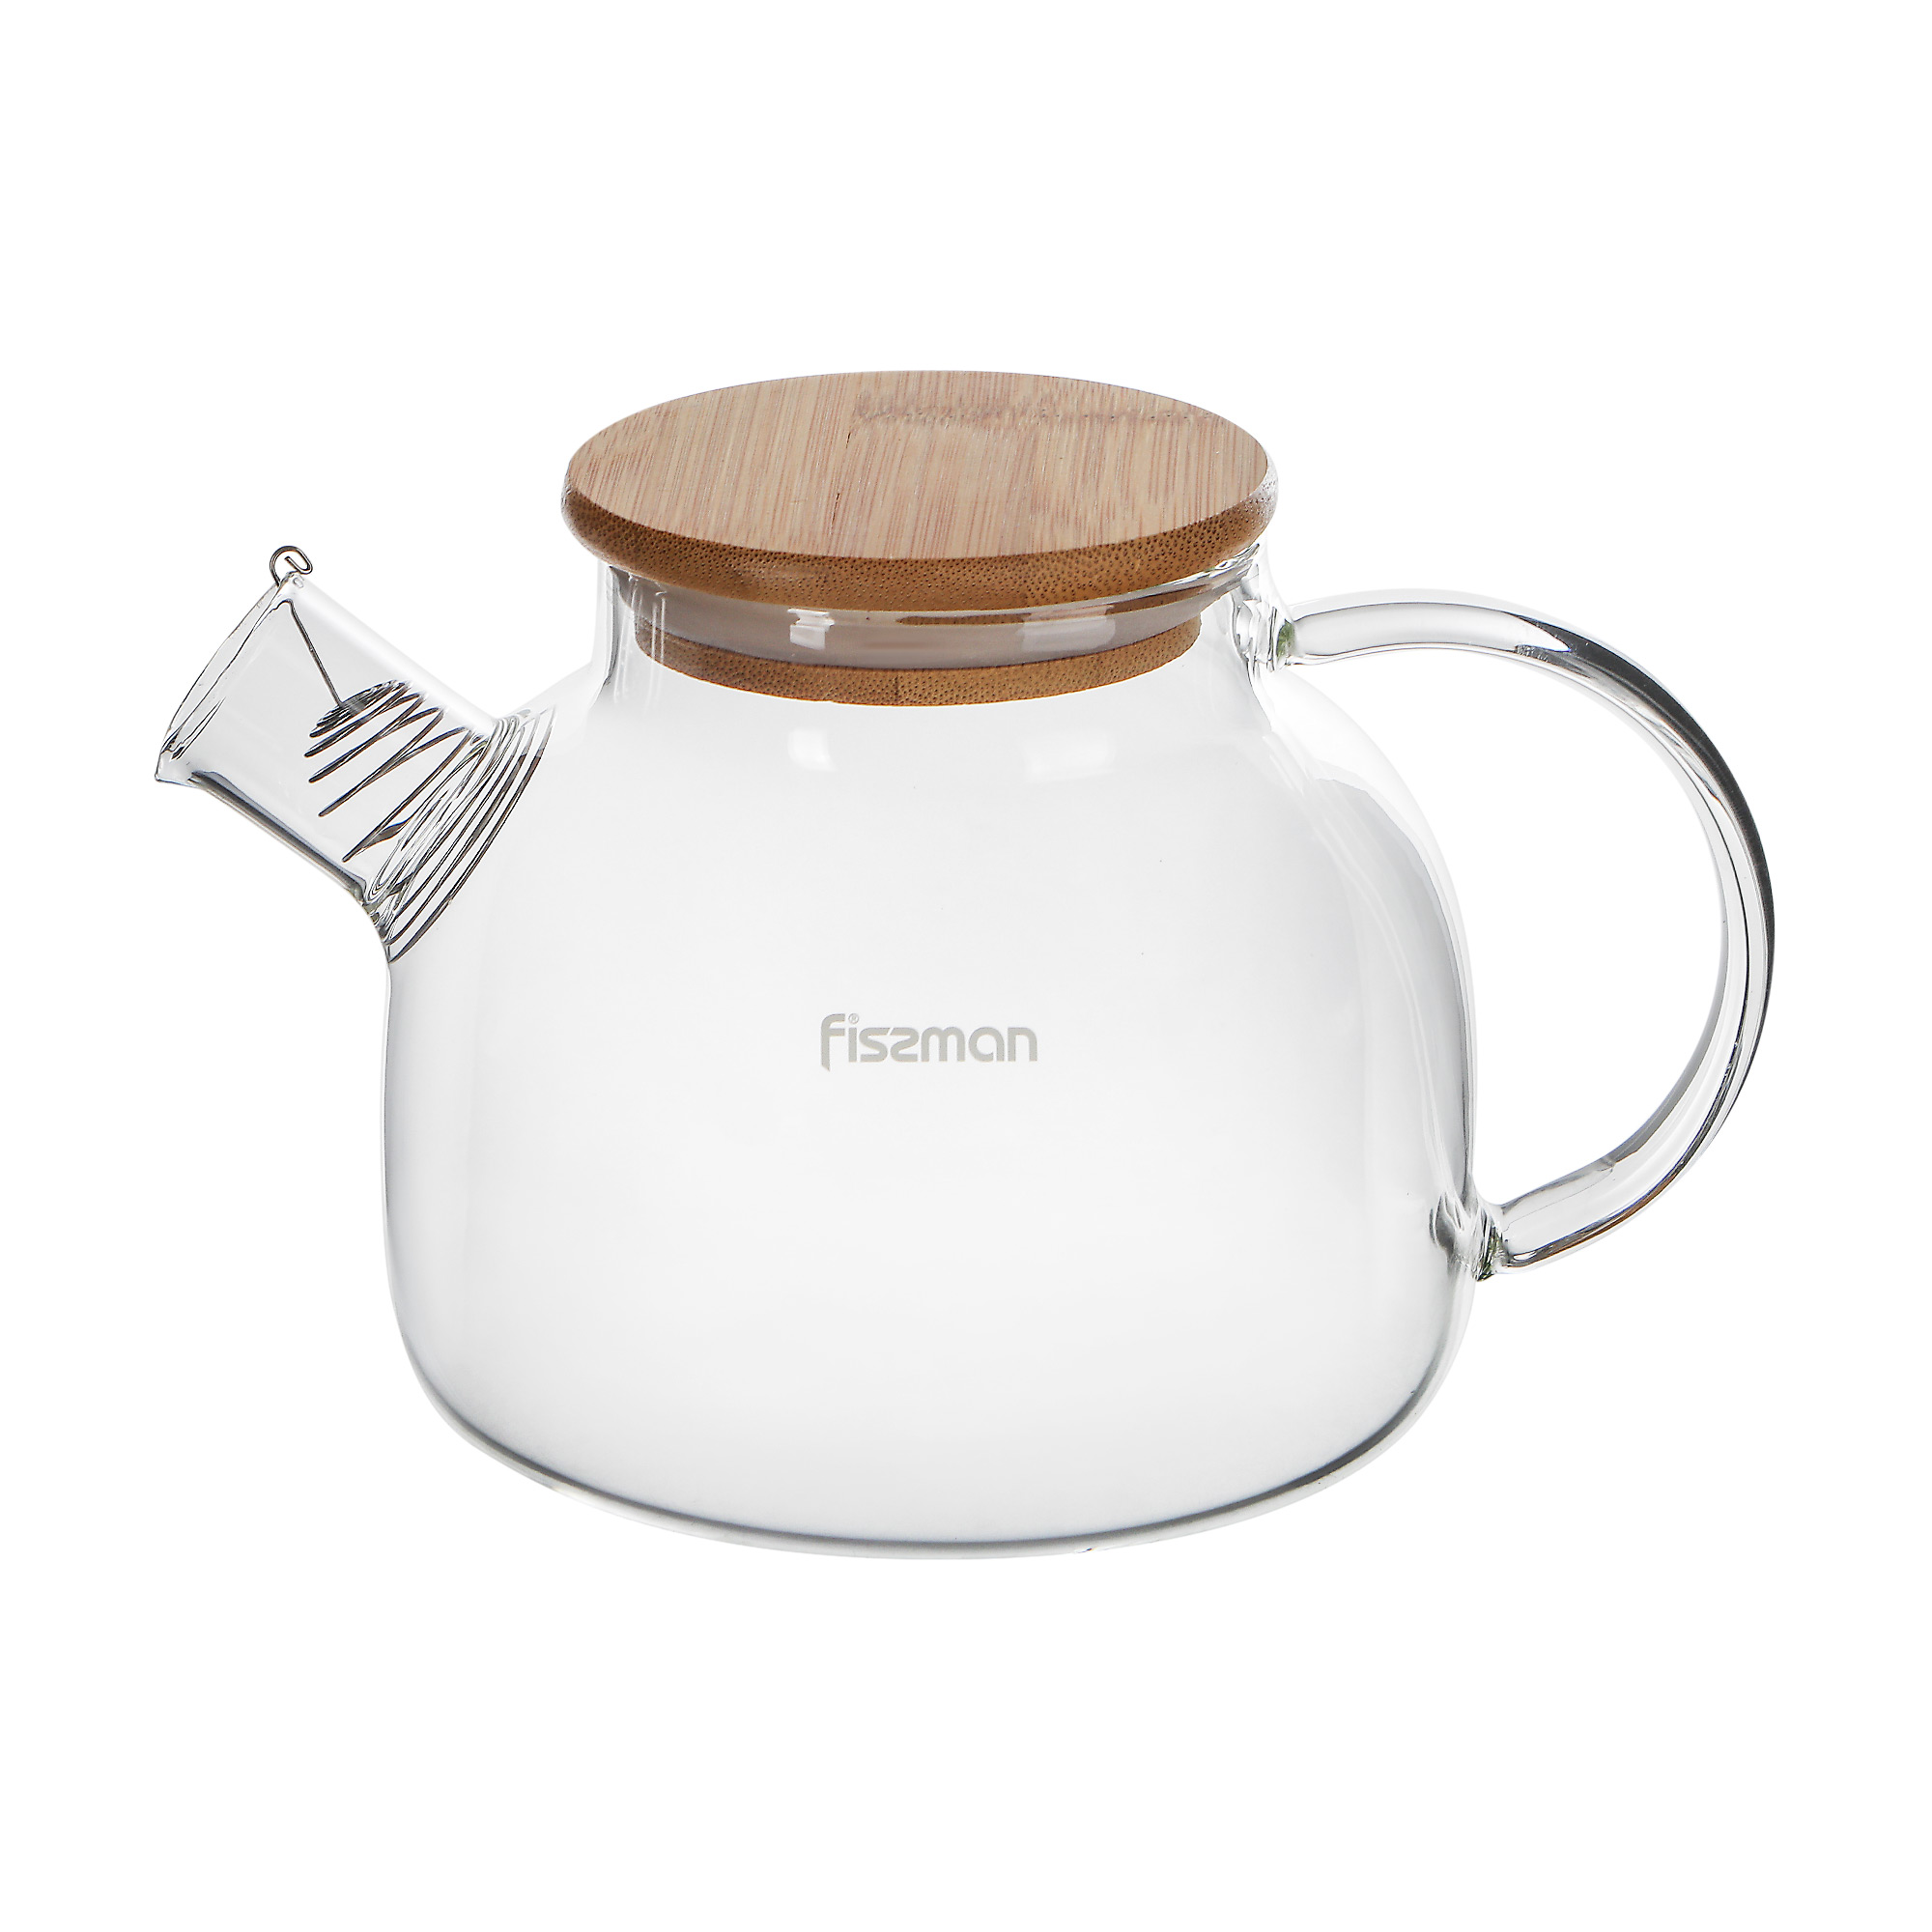 Заварочный чайник Fissman с фильтром 800 мл, цвет прозрачный, натуральное дерево - фото 1